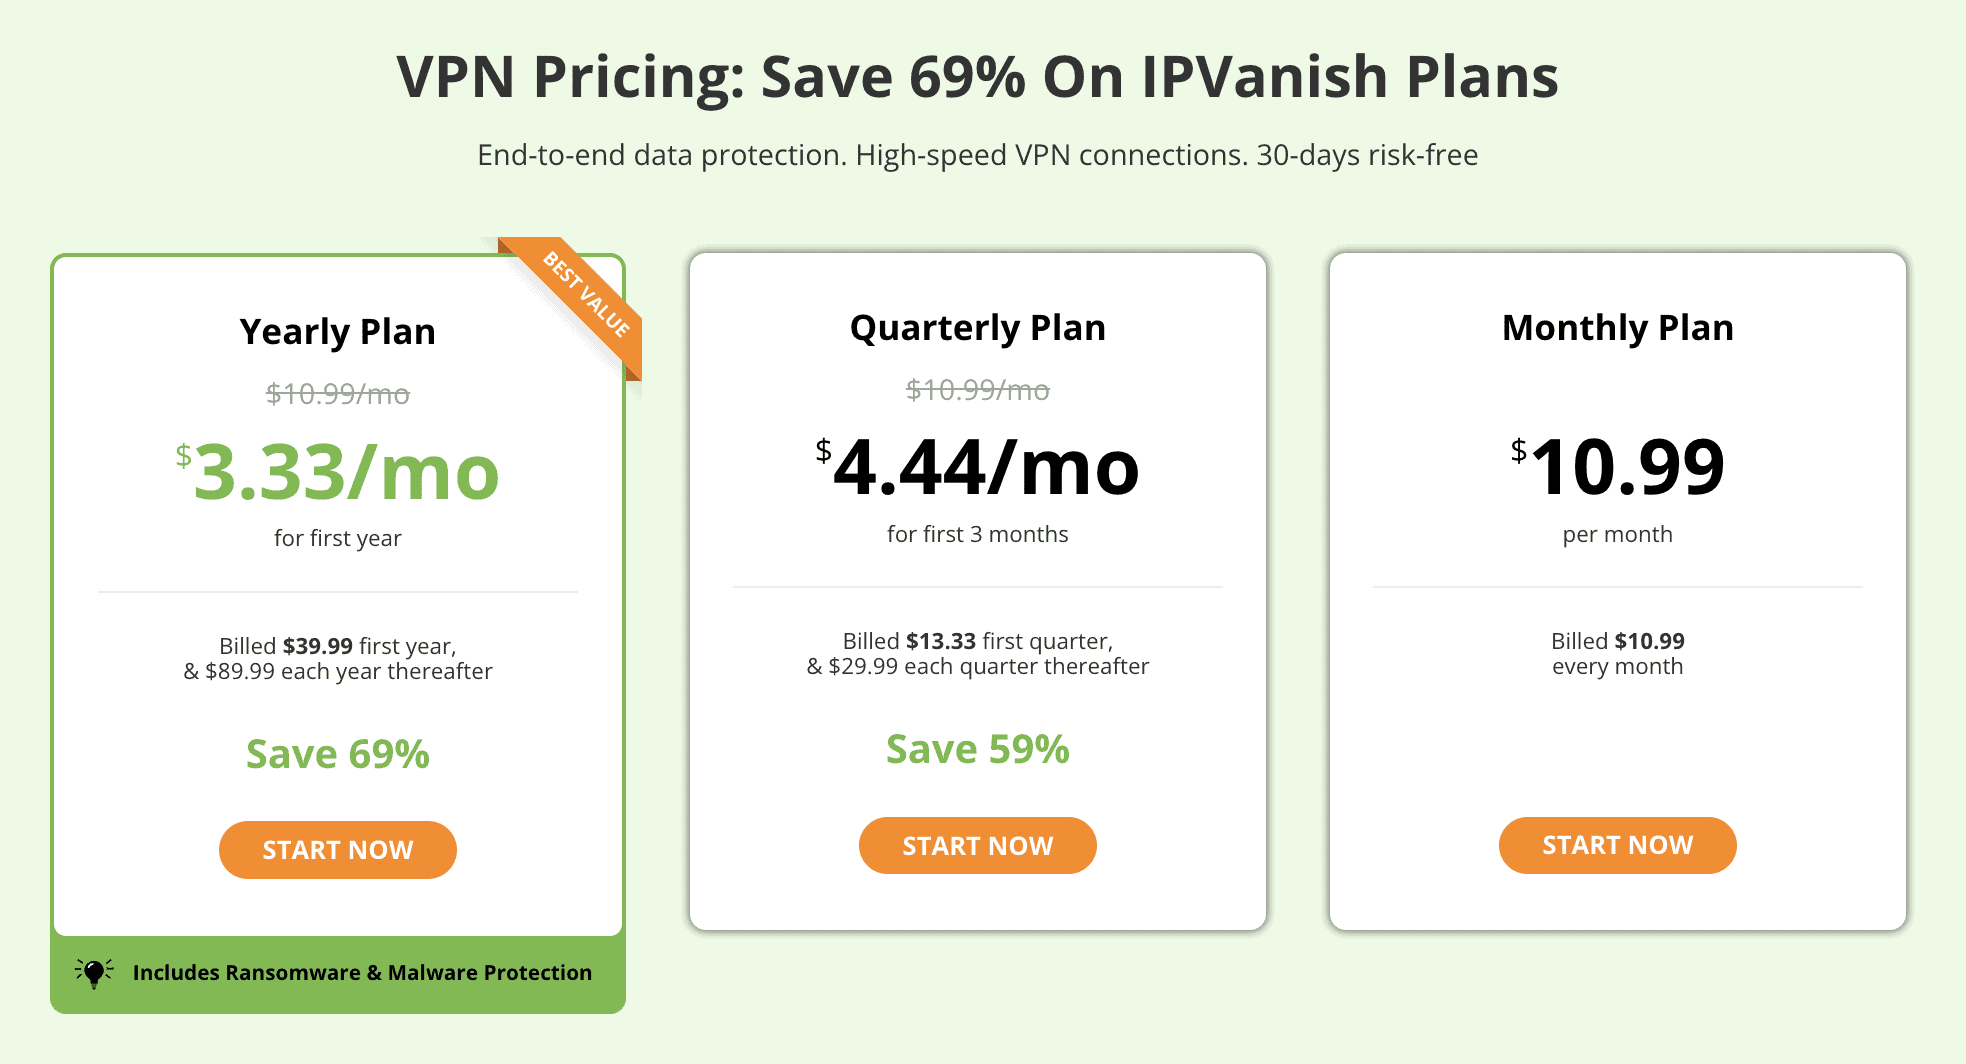 IPVanish vs Surfshark - IPVanish Pricing w/ Discount, IPVanish VPN vs Surfshark VPN - Which VPN to Choose, IPVanish VPN vs Surfshark VPN pros and cons